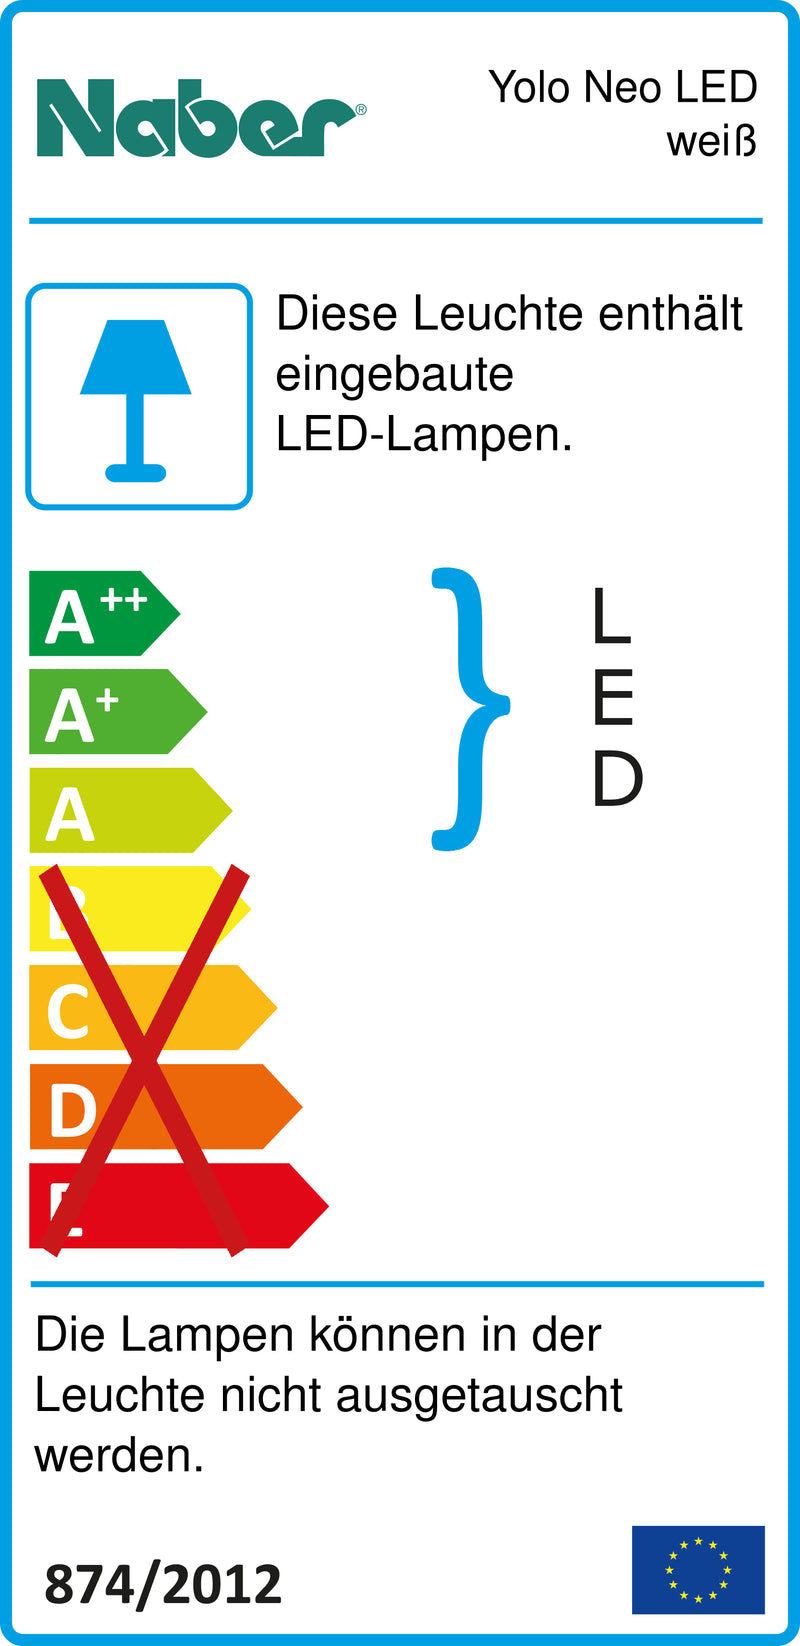 E-Label zu Zeichnung zu Yolo Neo LED weiß als Variante Set-2, 4000 K neutralweiß von Naber GmbH in der Kategorie Lichttechnik in Österreich auf conceptshop.at